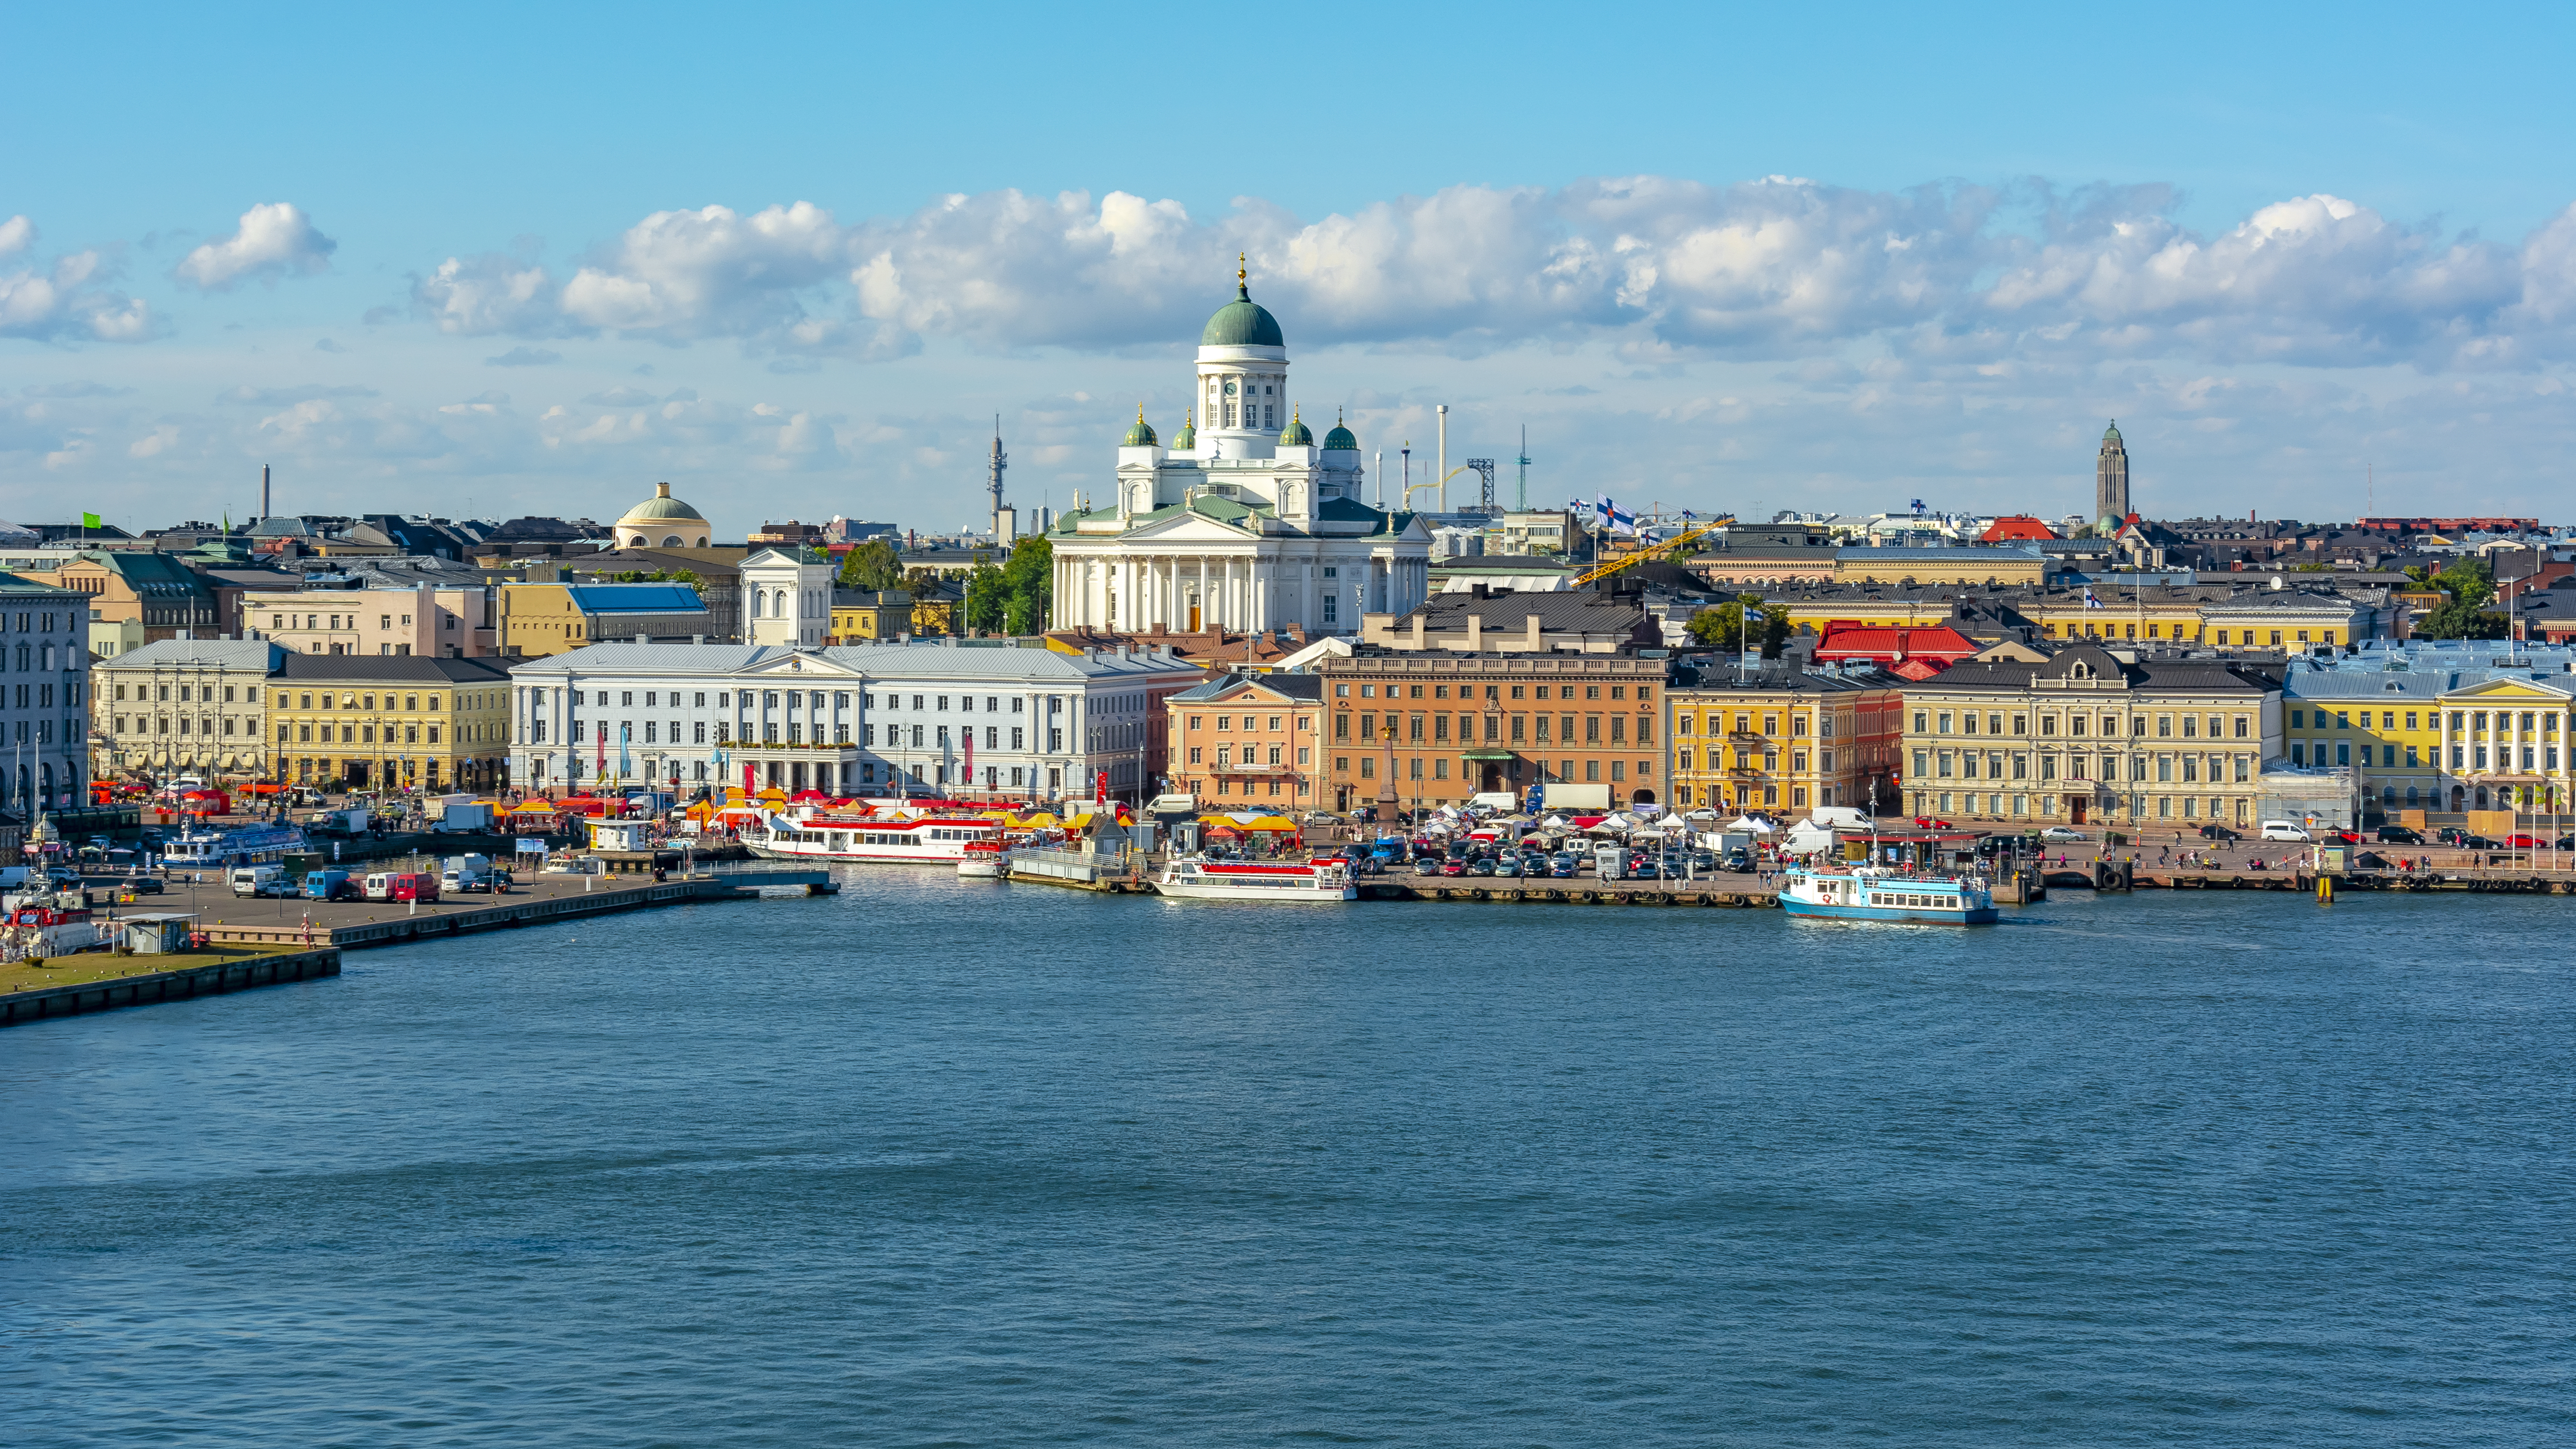 Хельсинки, столица Финляндии, ВНЖ которой могут получить россияне, украинцы и белорусы